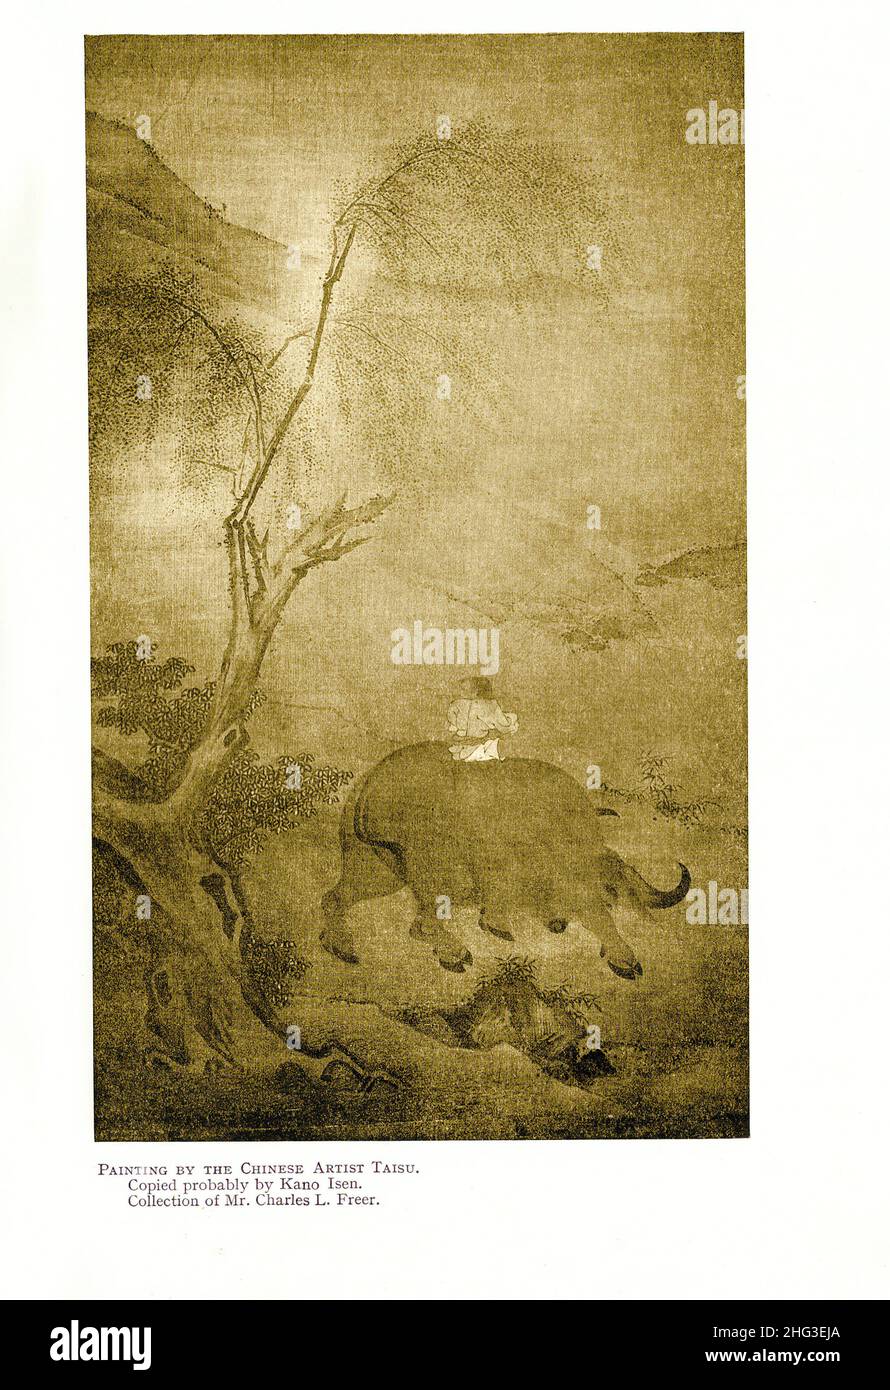 Chinesische mittelalterliche Malerei des chinesischen Künstlers Taisu. Gemälde der Nördlichen Song-Schule. Wahrscheinlich von Kano Isen kopiert. Reproduktion von Buch illus Stockfoto